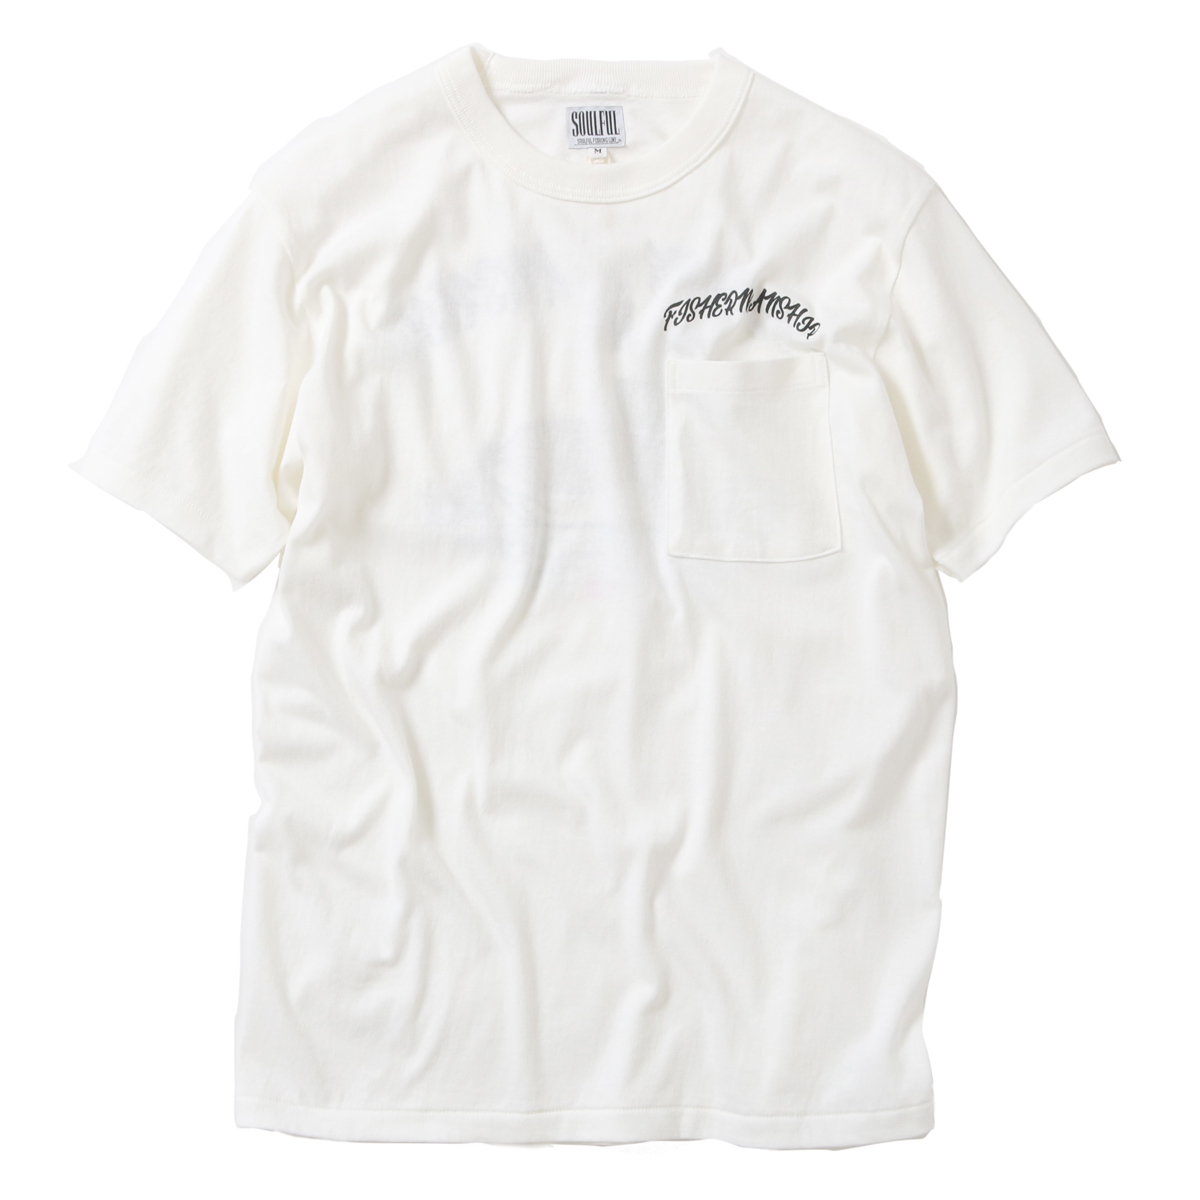 so Wolf ruSOULFUL FISHERMAN*S CLUB FISHERMANSHIP S/S POCKET T-SHIRT short sleeves T-shirt SFL-21008FC NATURAL natural 